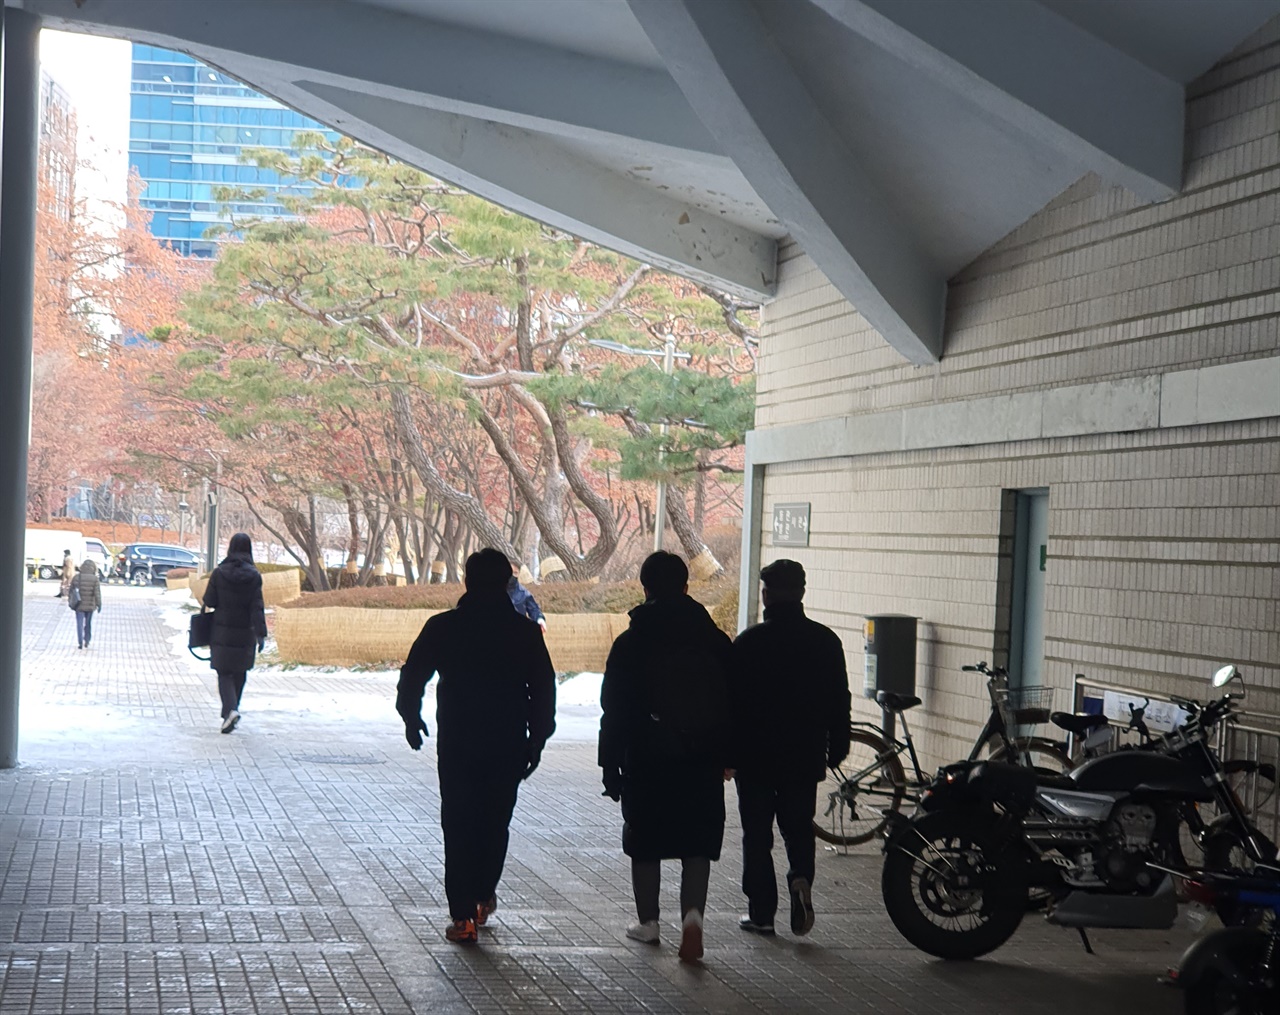  <사진-2> 무죄 선고 후, 서울 고등법원 서관에서 동관으로 걸어가고 있다. 사진에서처럼 어두웠던 과거에서 벗어나 앞으로는 환한 미래만이 펼쳐지길 바란다.